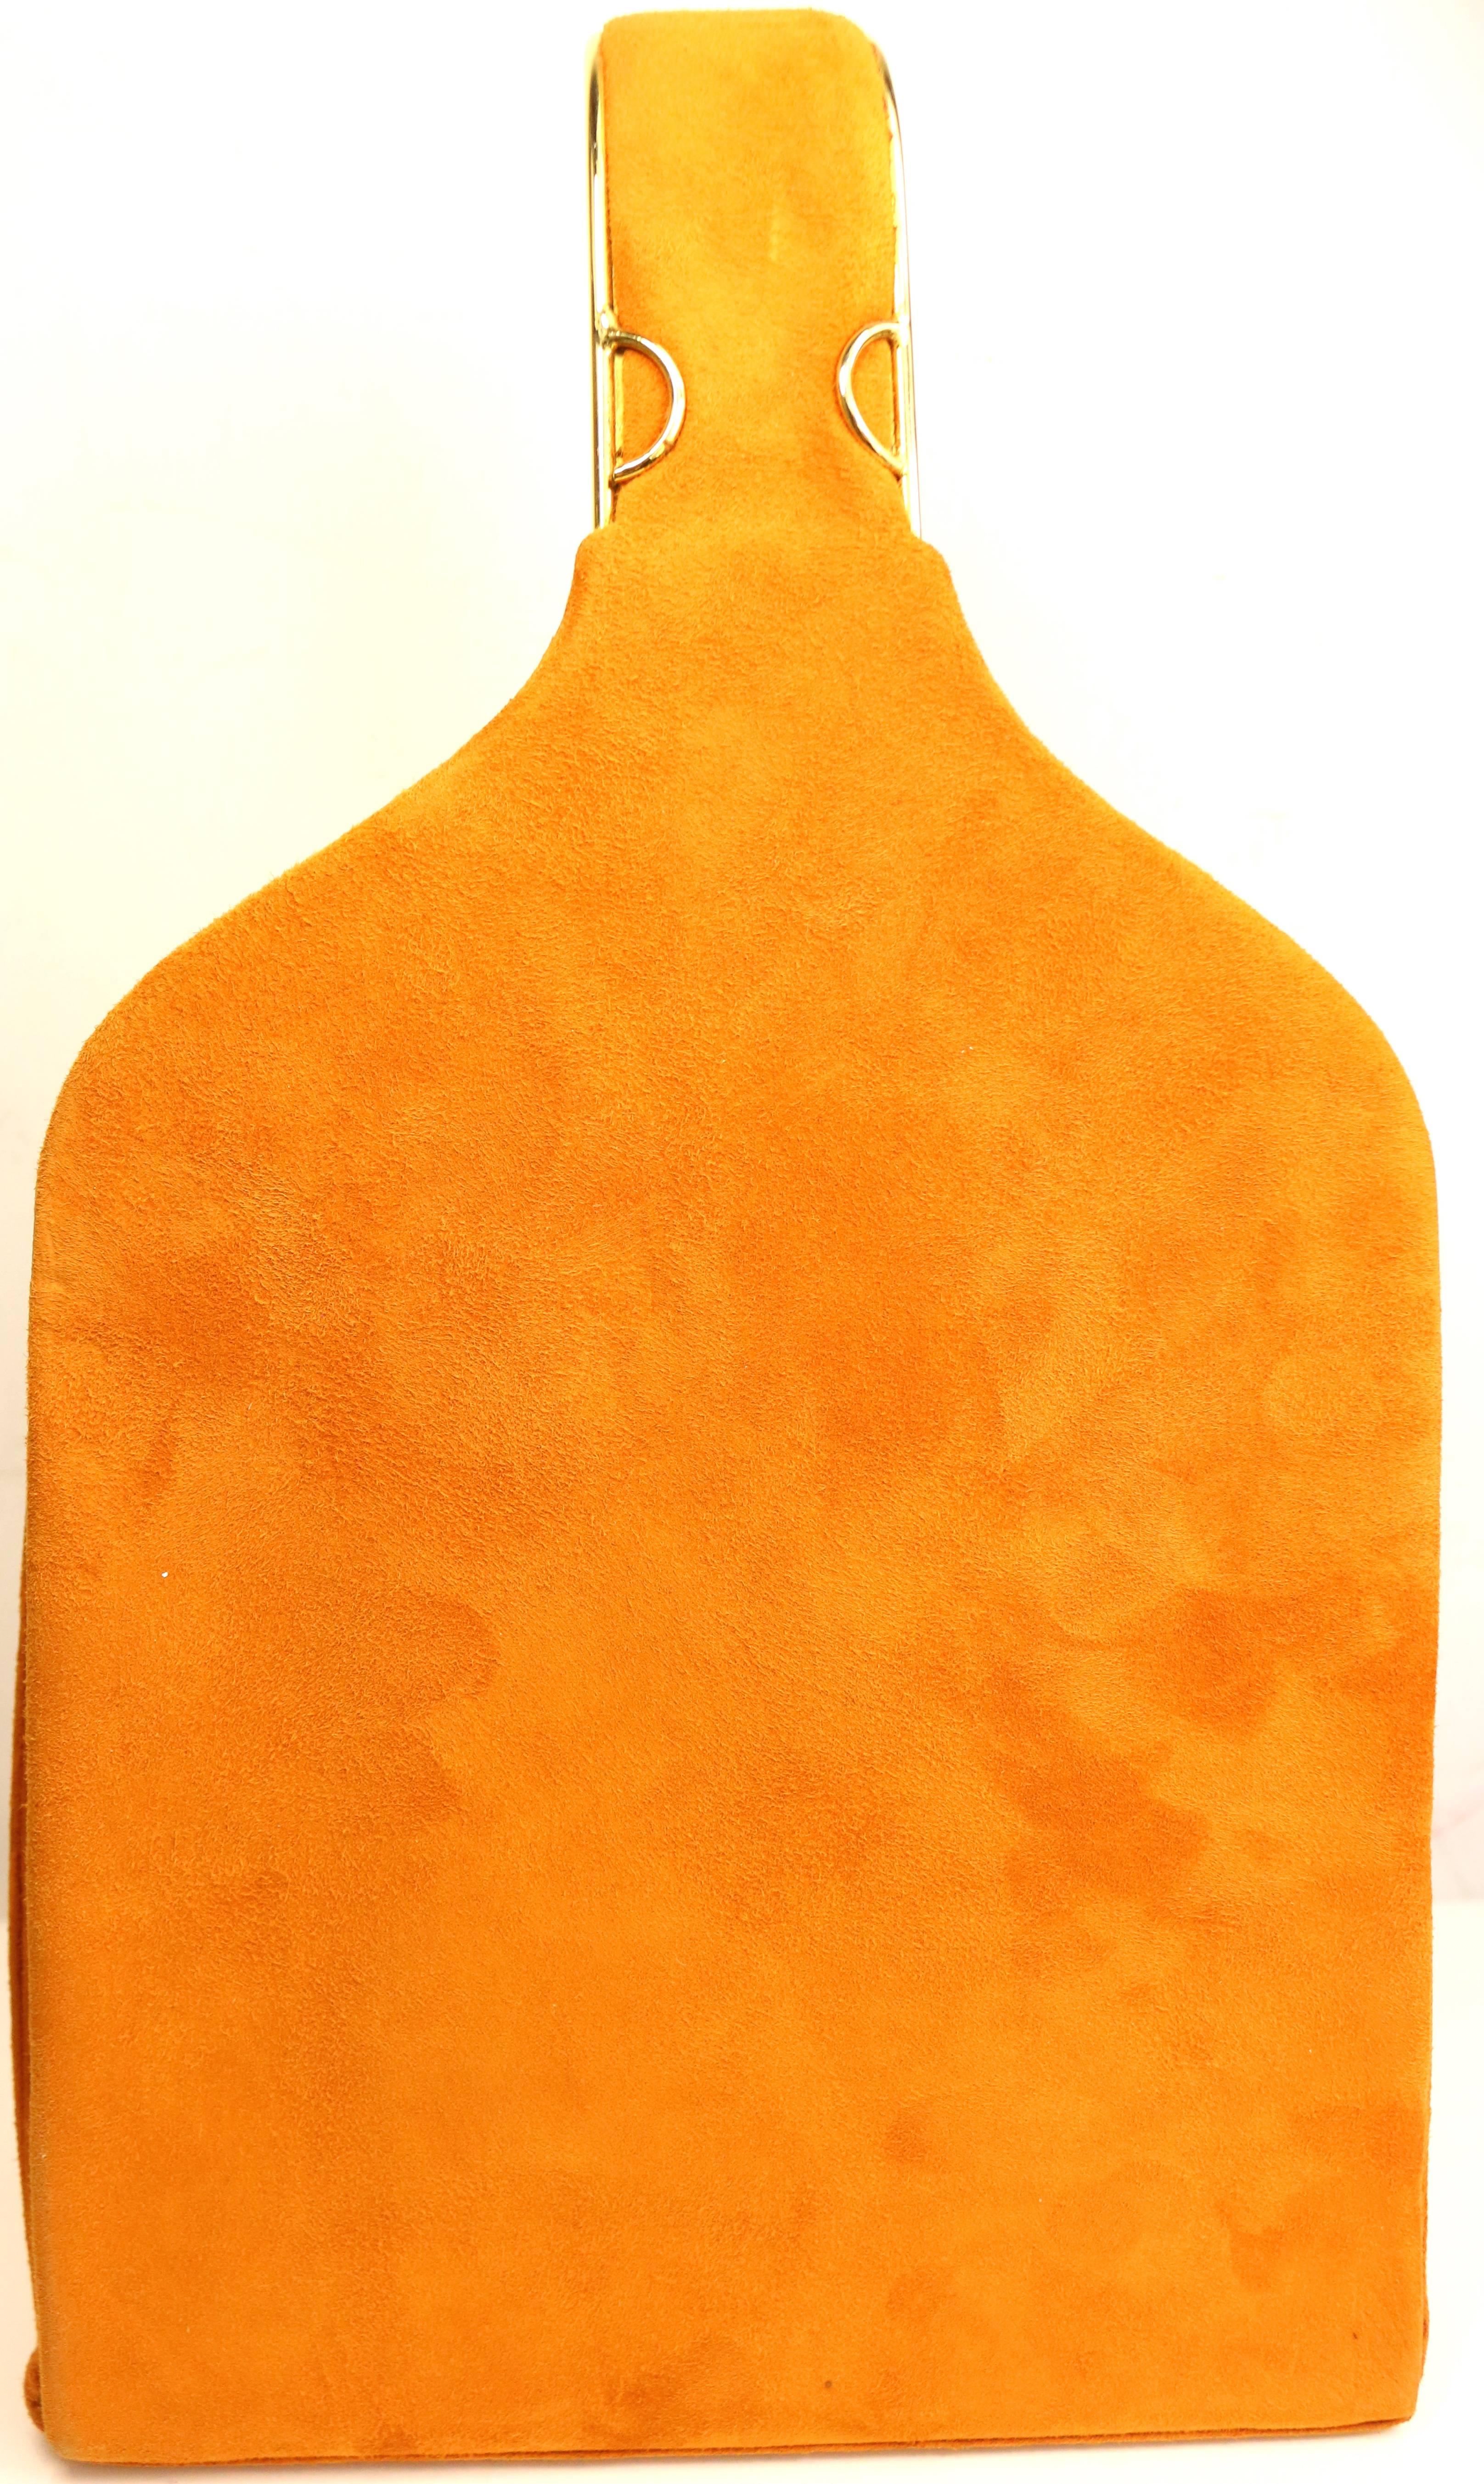 Orange Andrea Pfister - Sac à main unique en daim jaune orange et orange, années 80 en vente